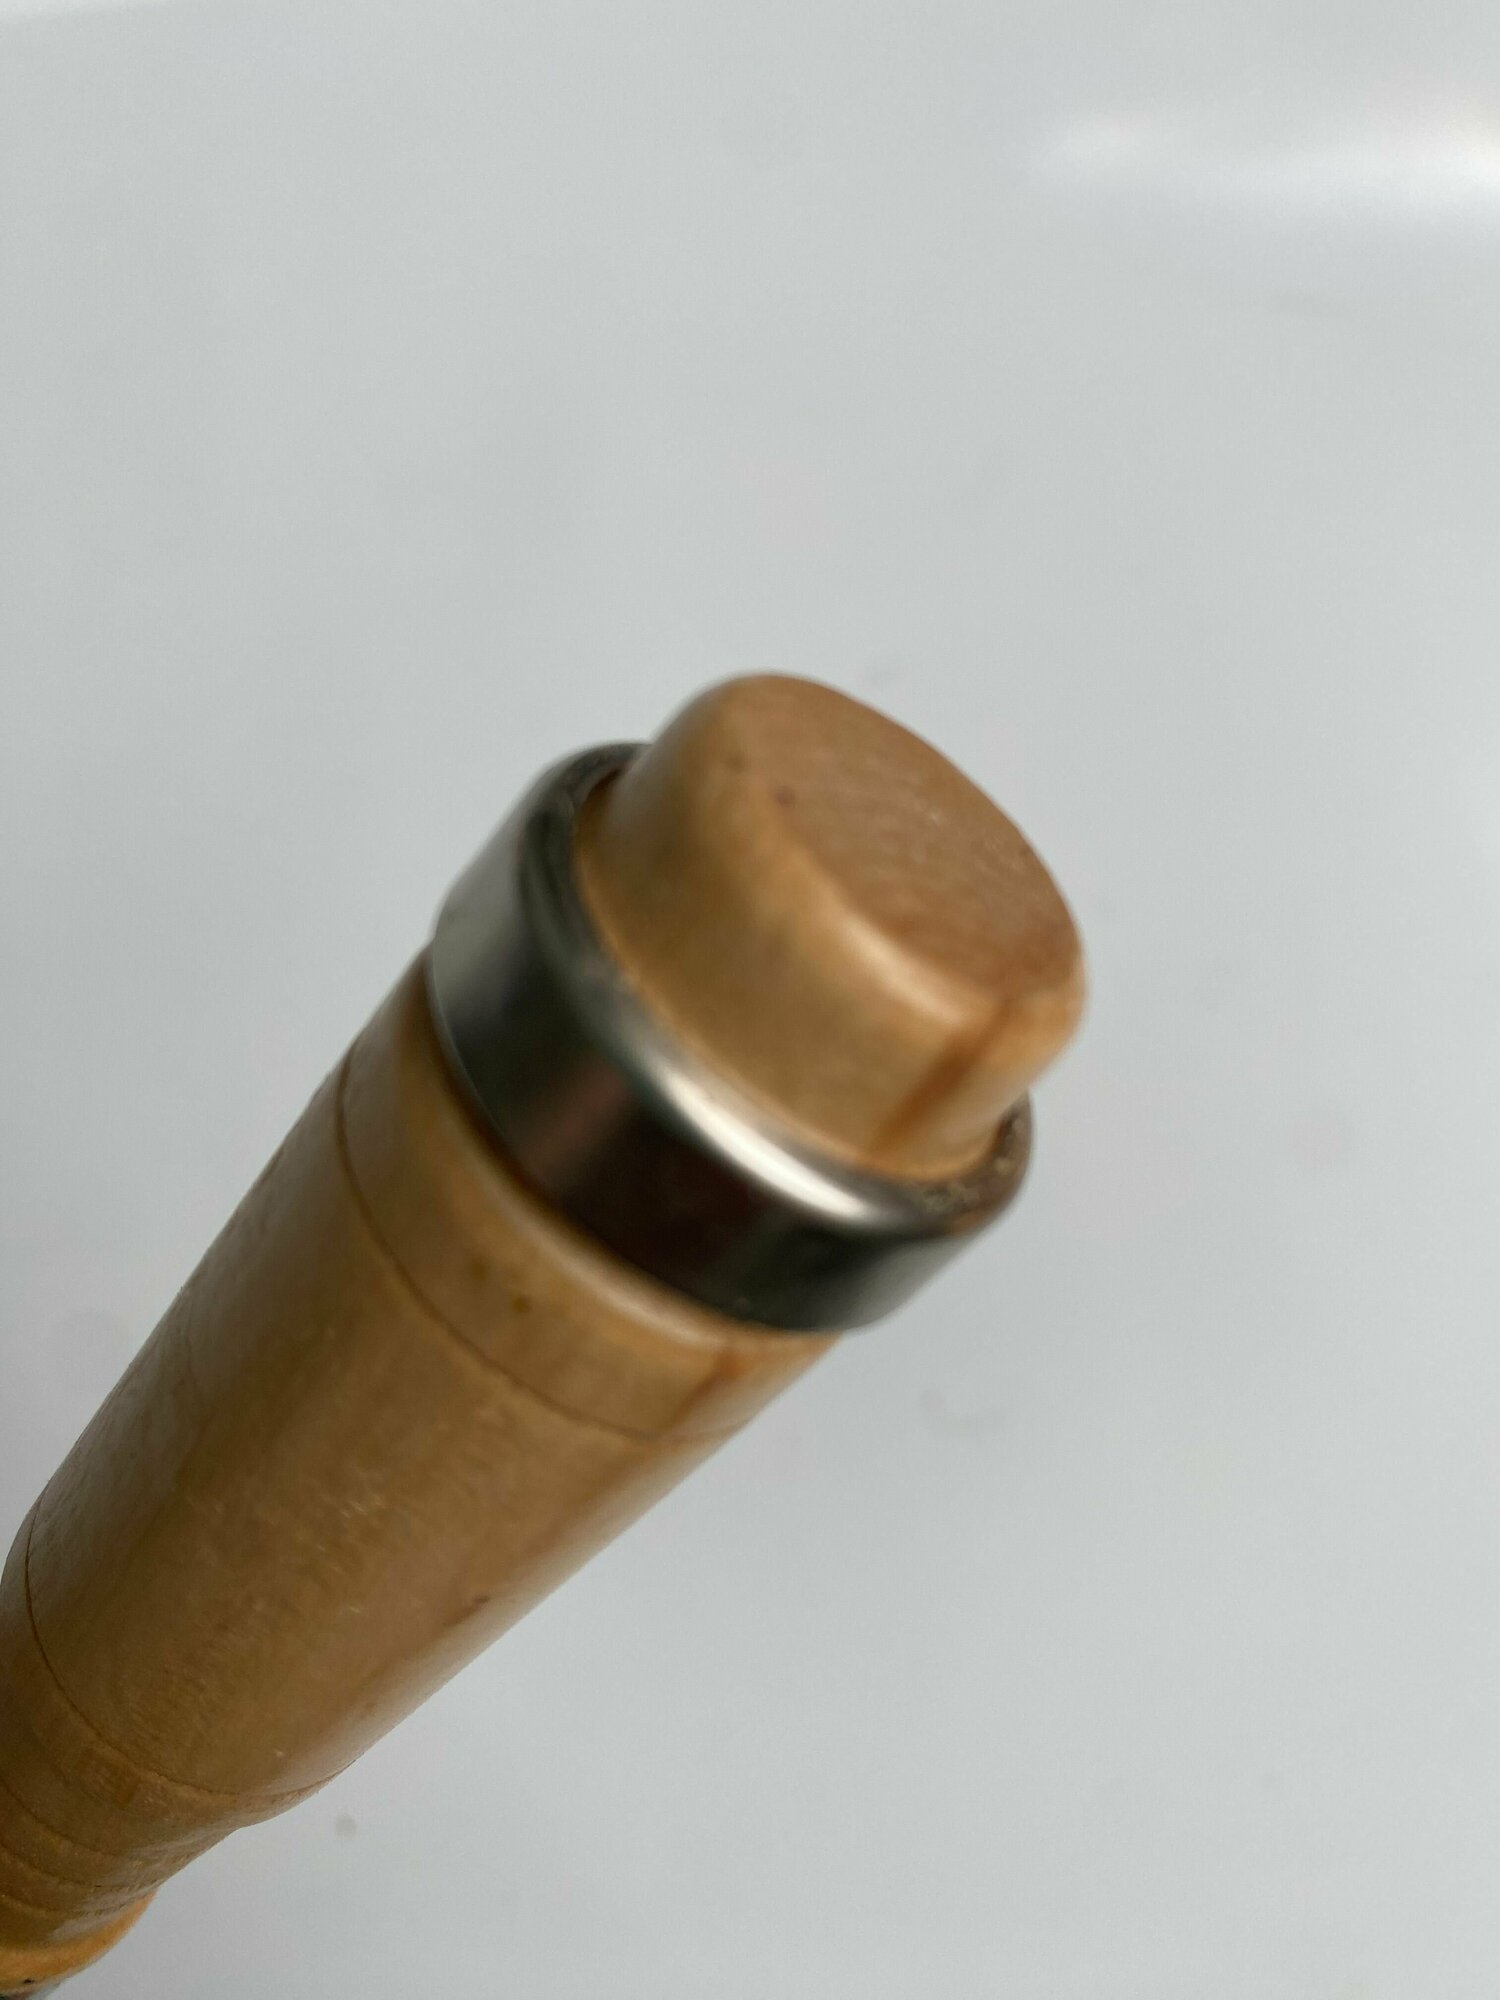 Стамеска долото EKTO с деревянной ручкой 32